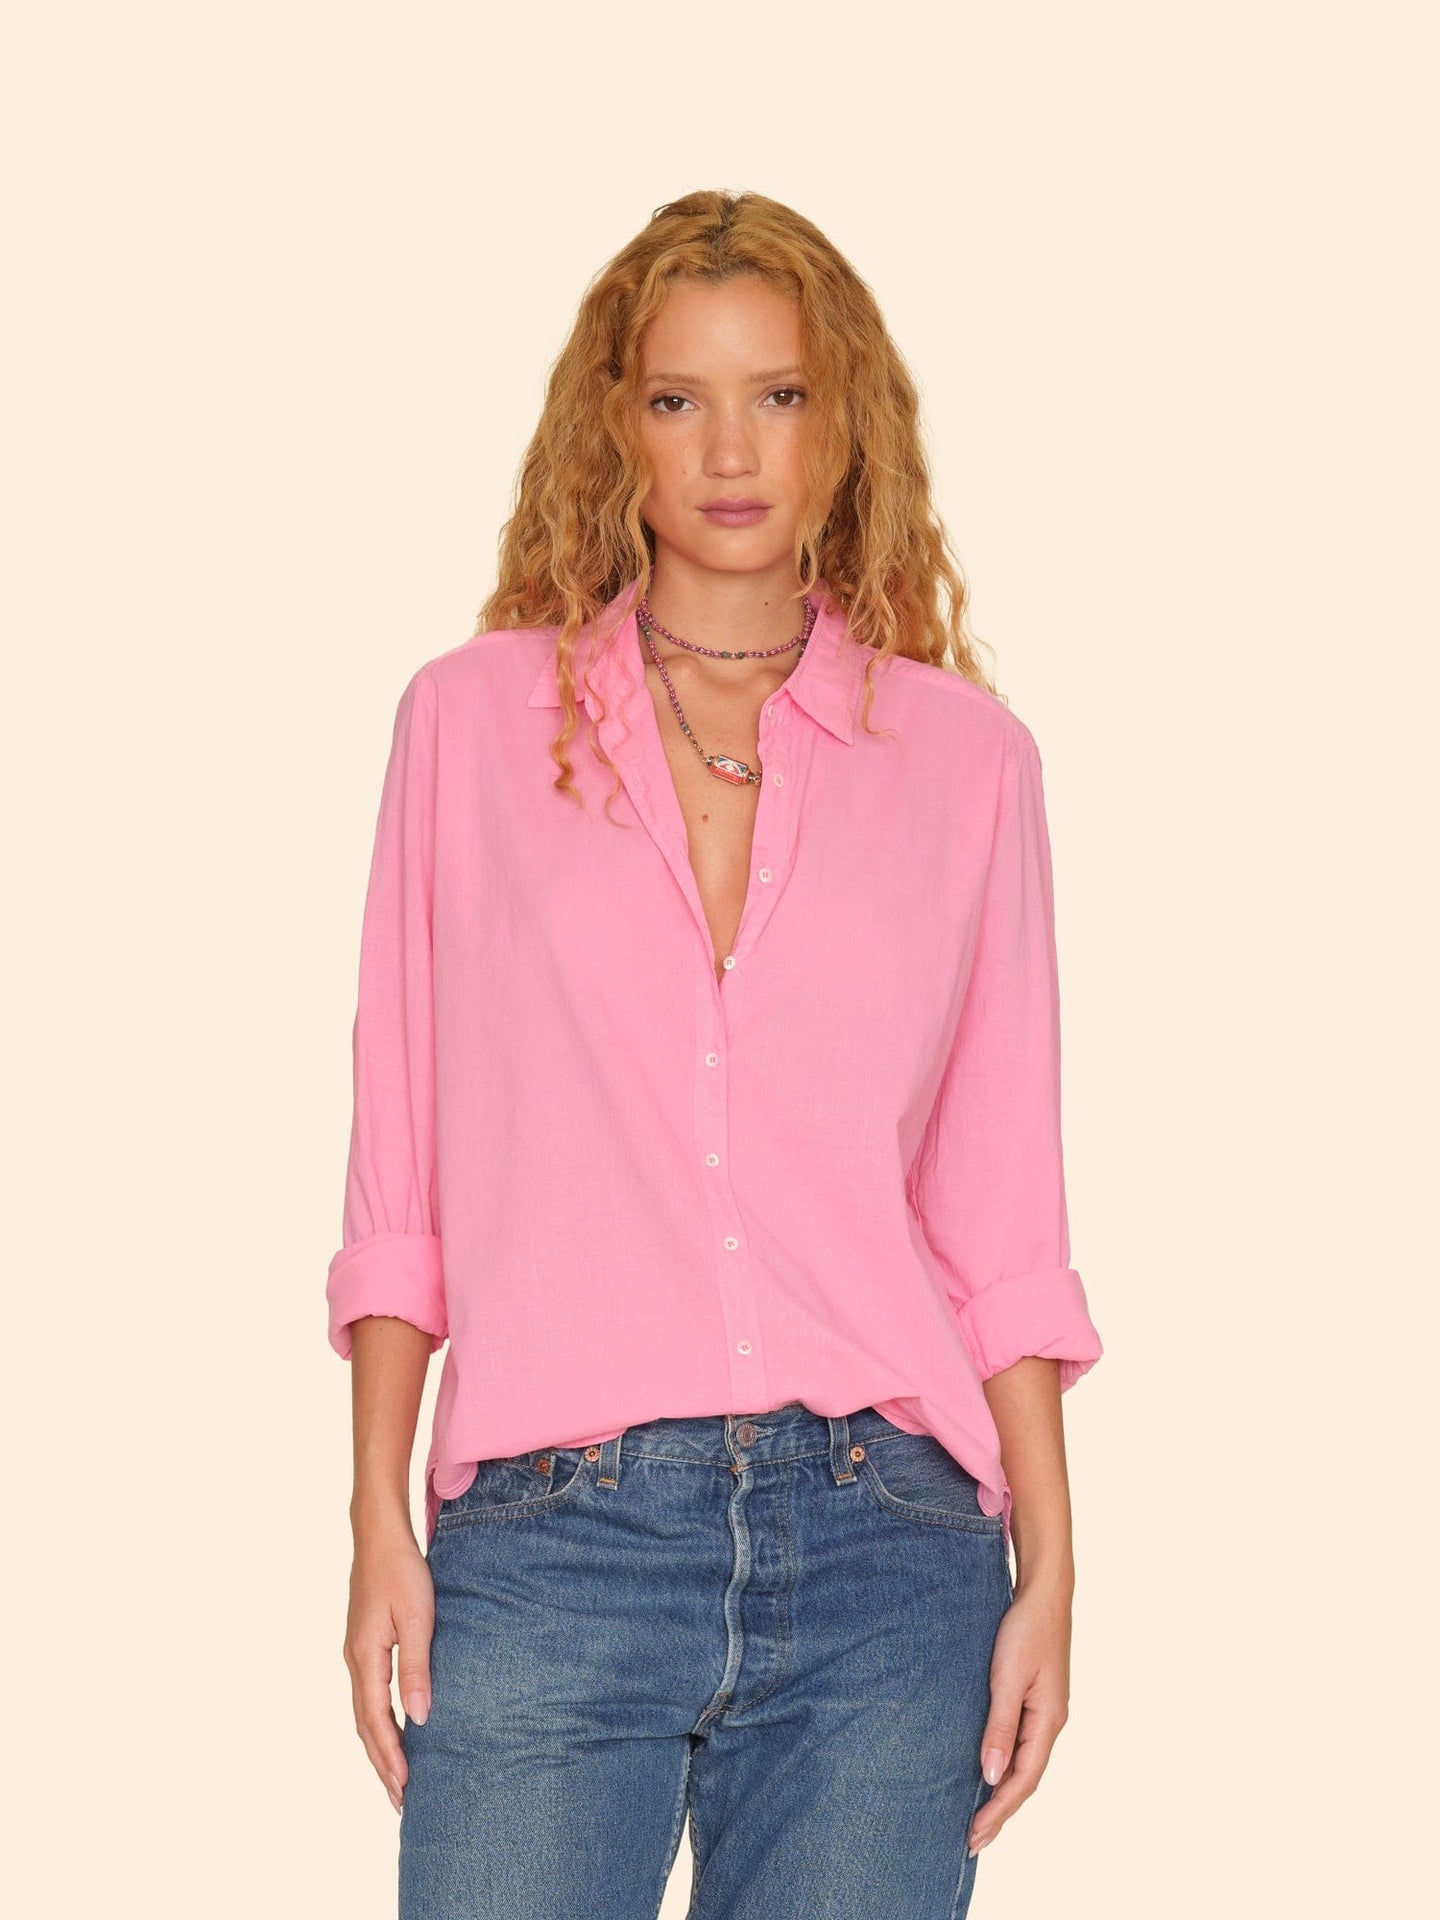 Xirena Shirt Rose Pink Beau Shirt